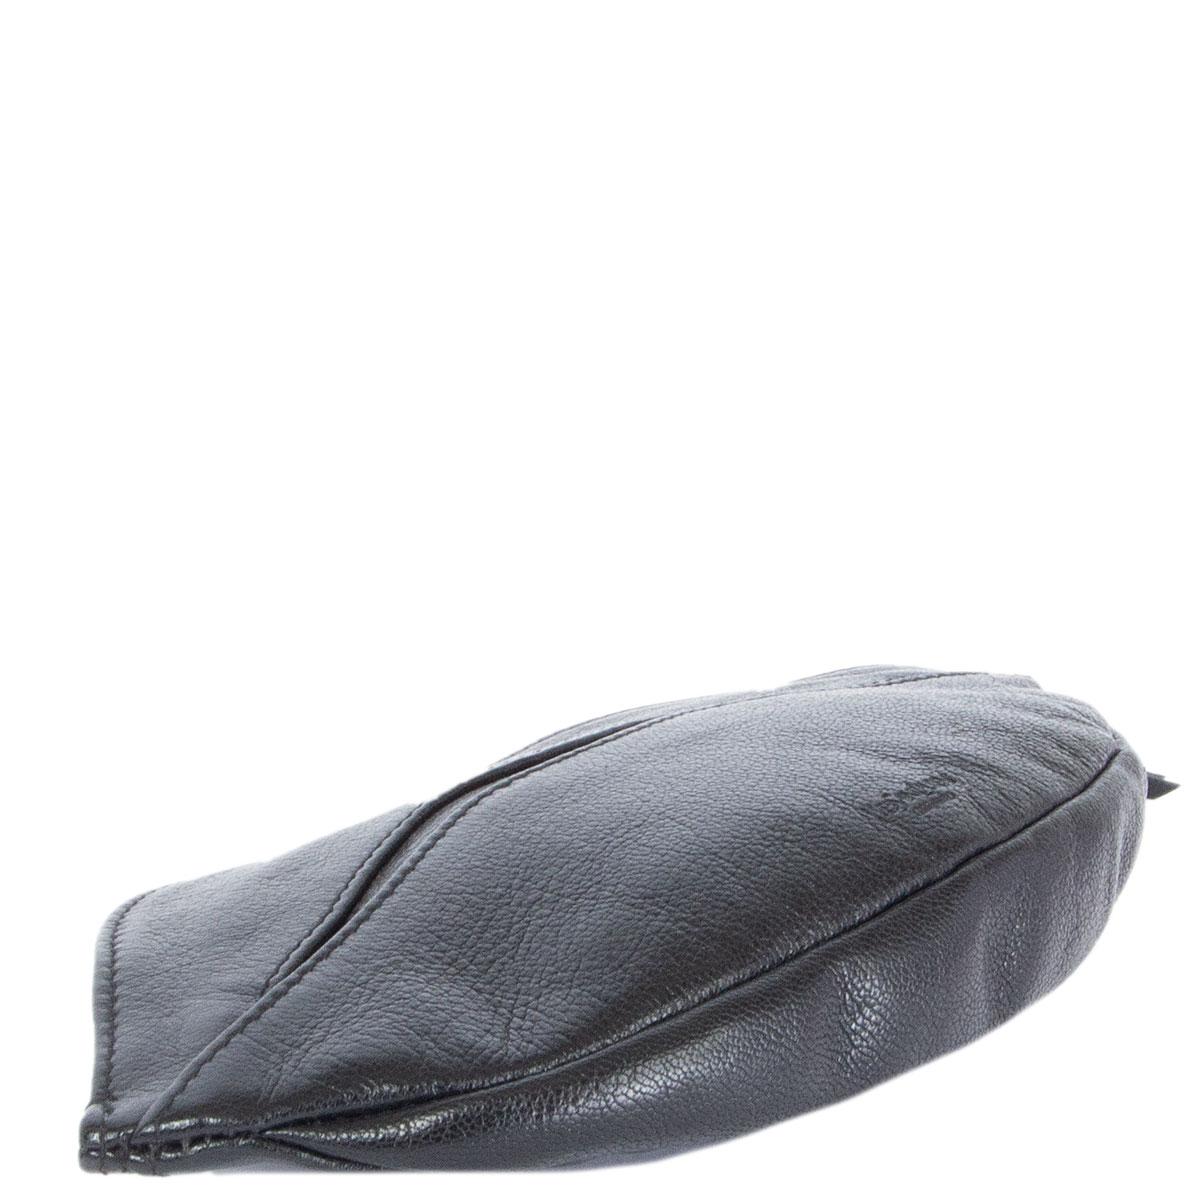 Black YVES SAINT LAURENT black leather DALI LIP ZIP POUCH Clutch Bag